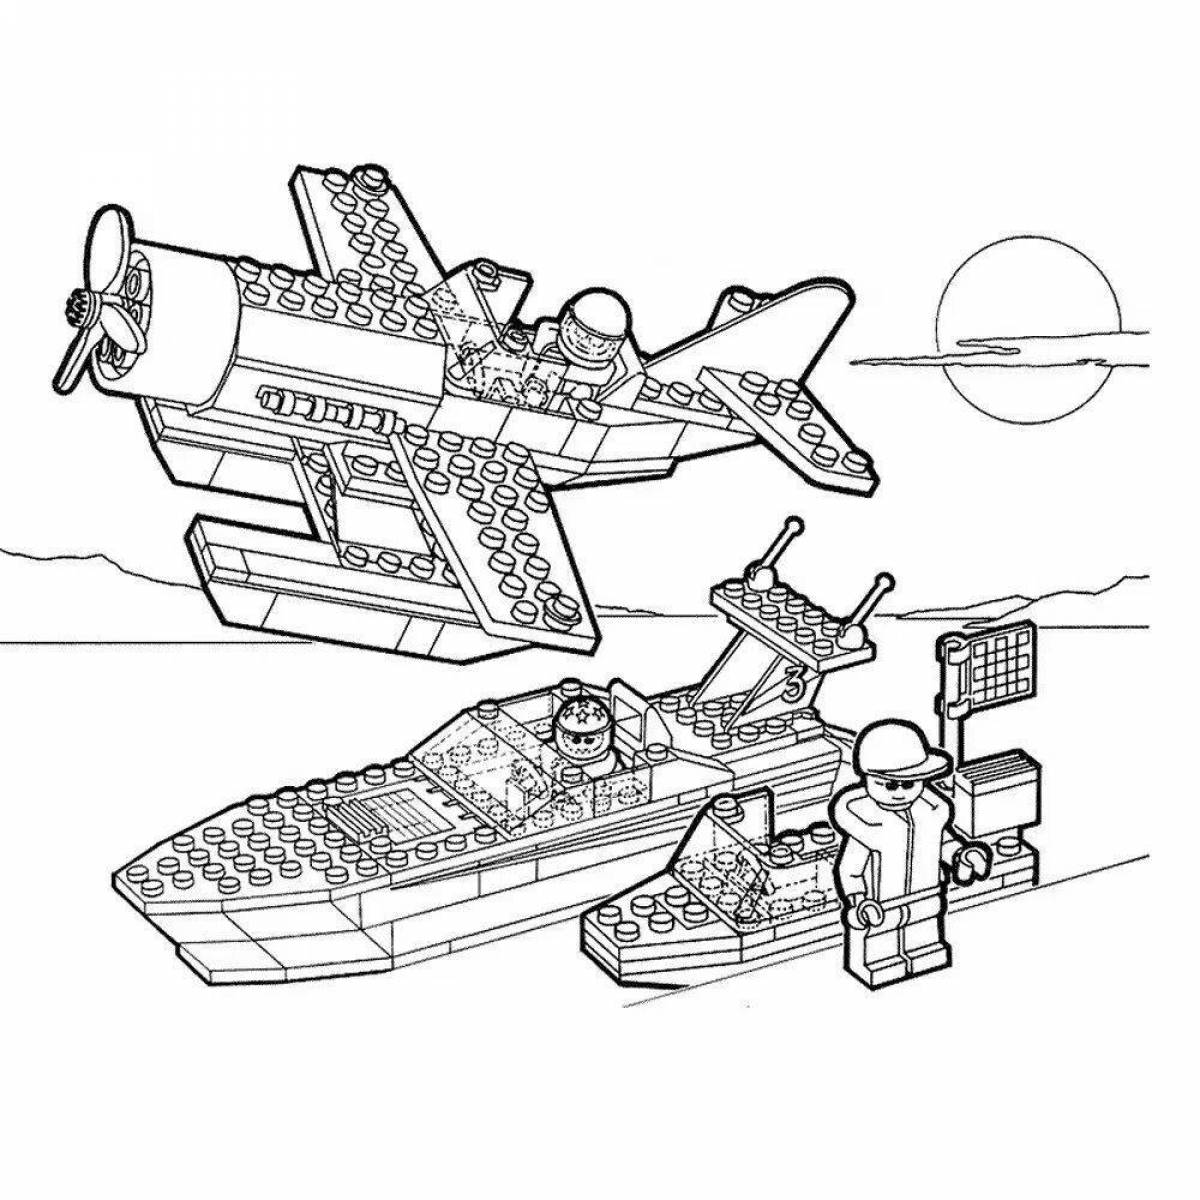 Сказочная страница раскраски корабля minecraft